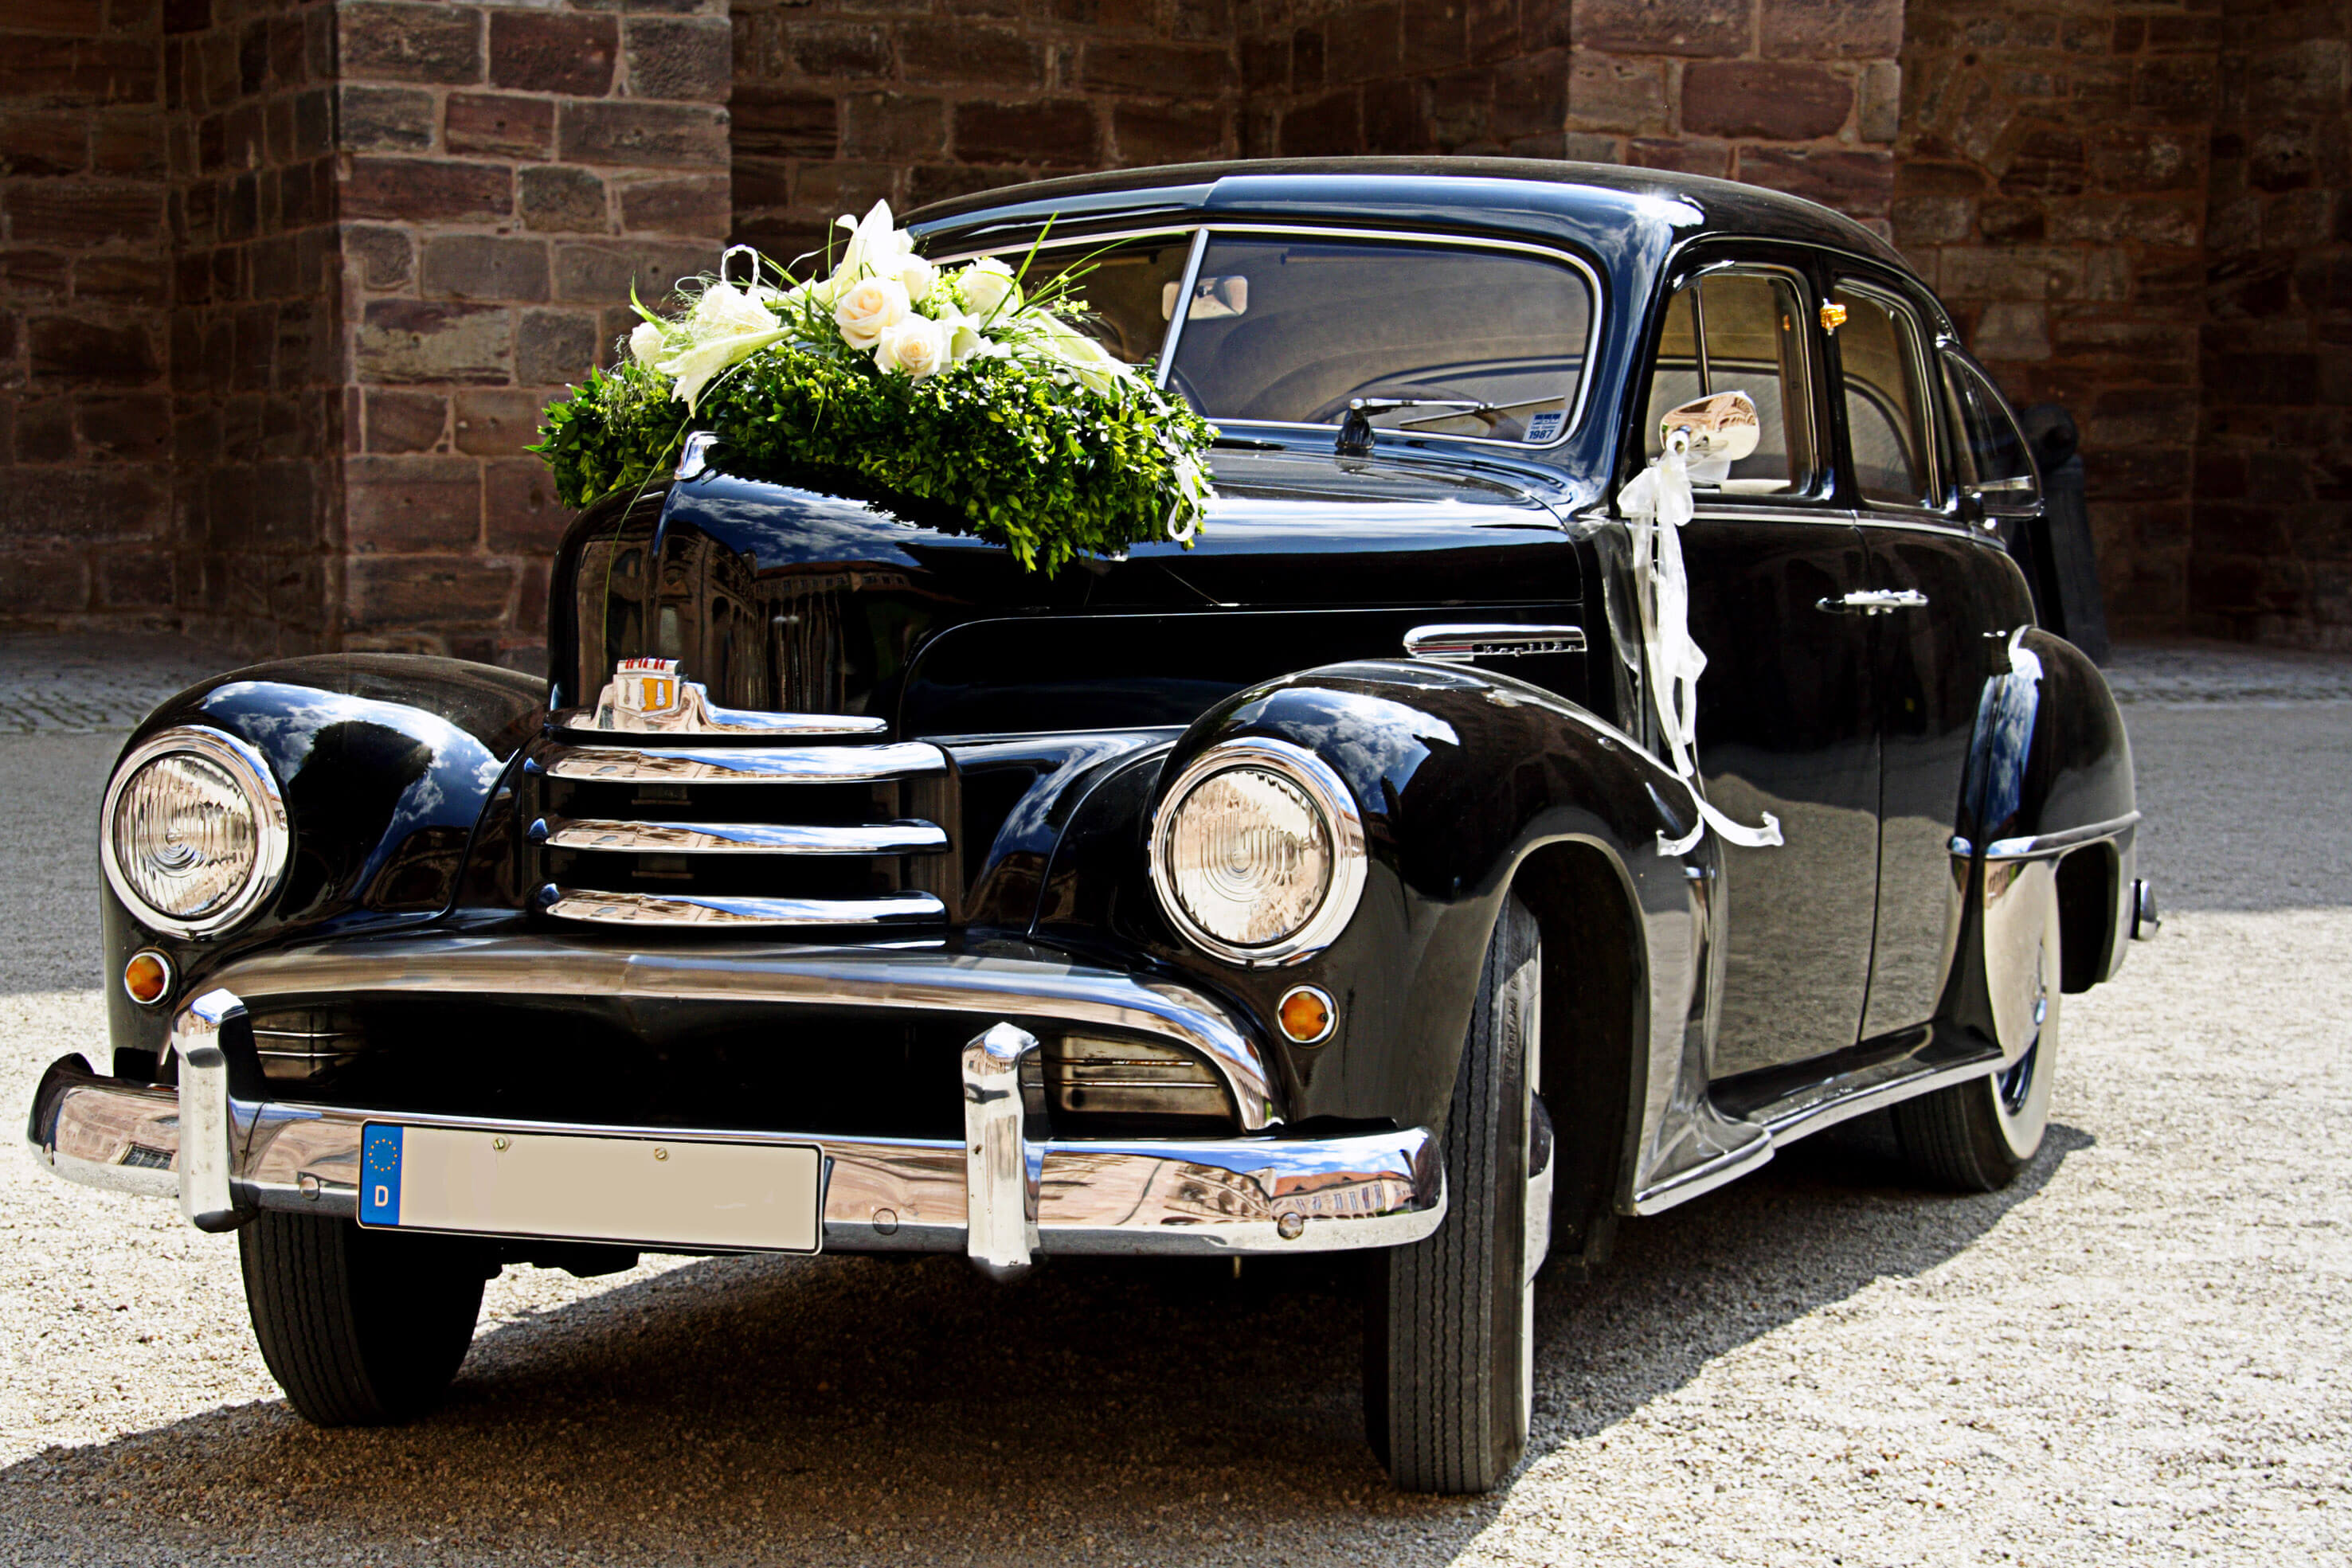 Autoschmuck zur Hochzeit - Vintage Herzen online bestellen!